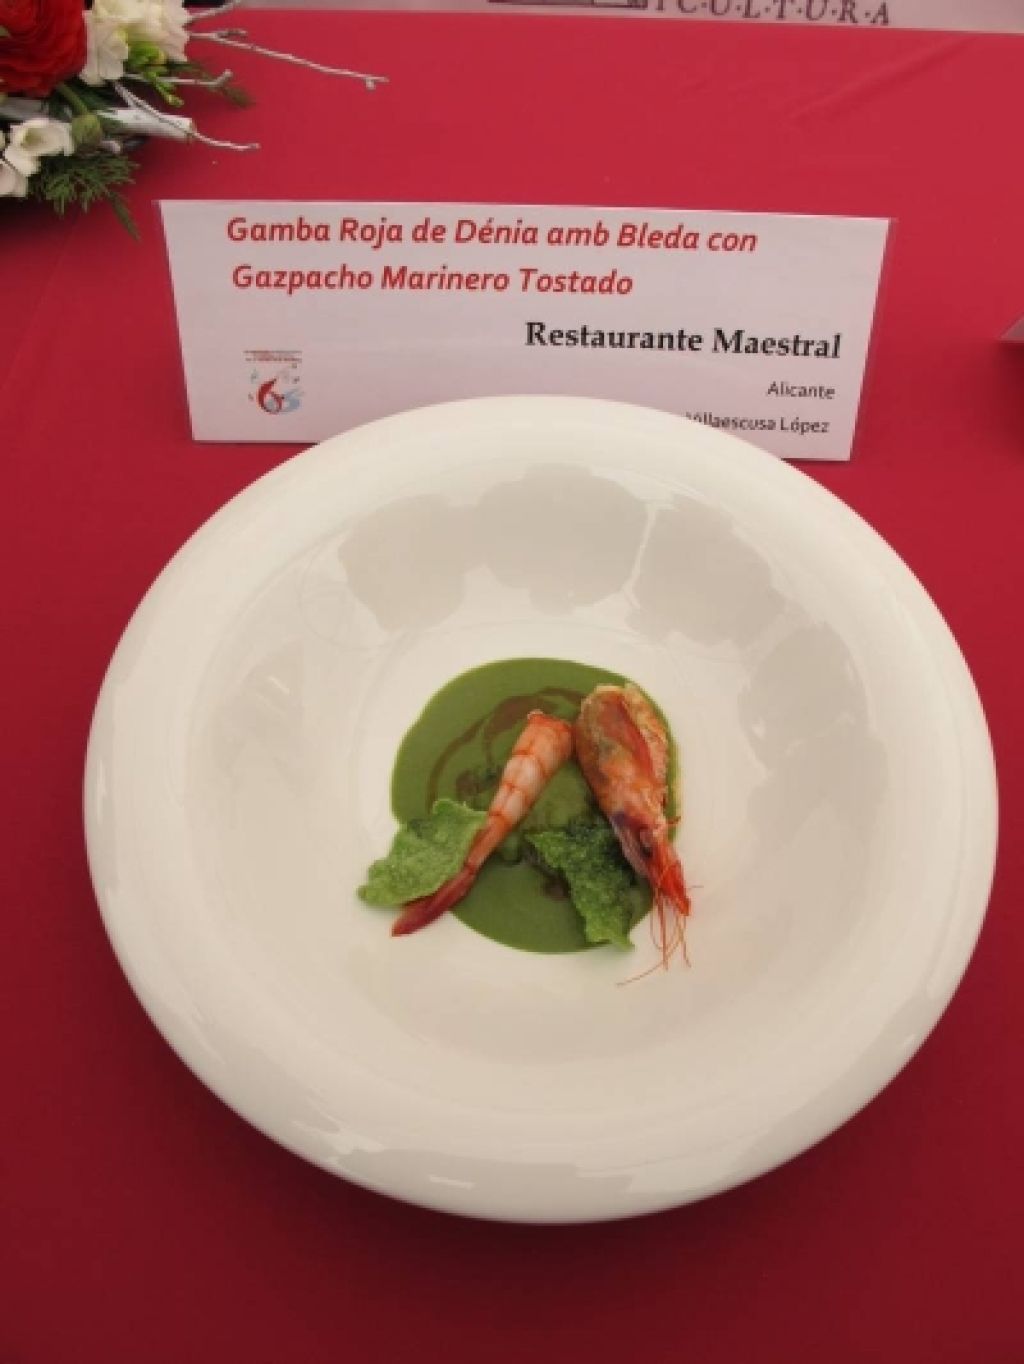  Antonio Villaescusa gana el 6º Concurso Internacional de Cocina 